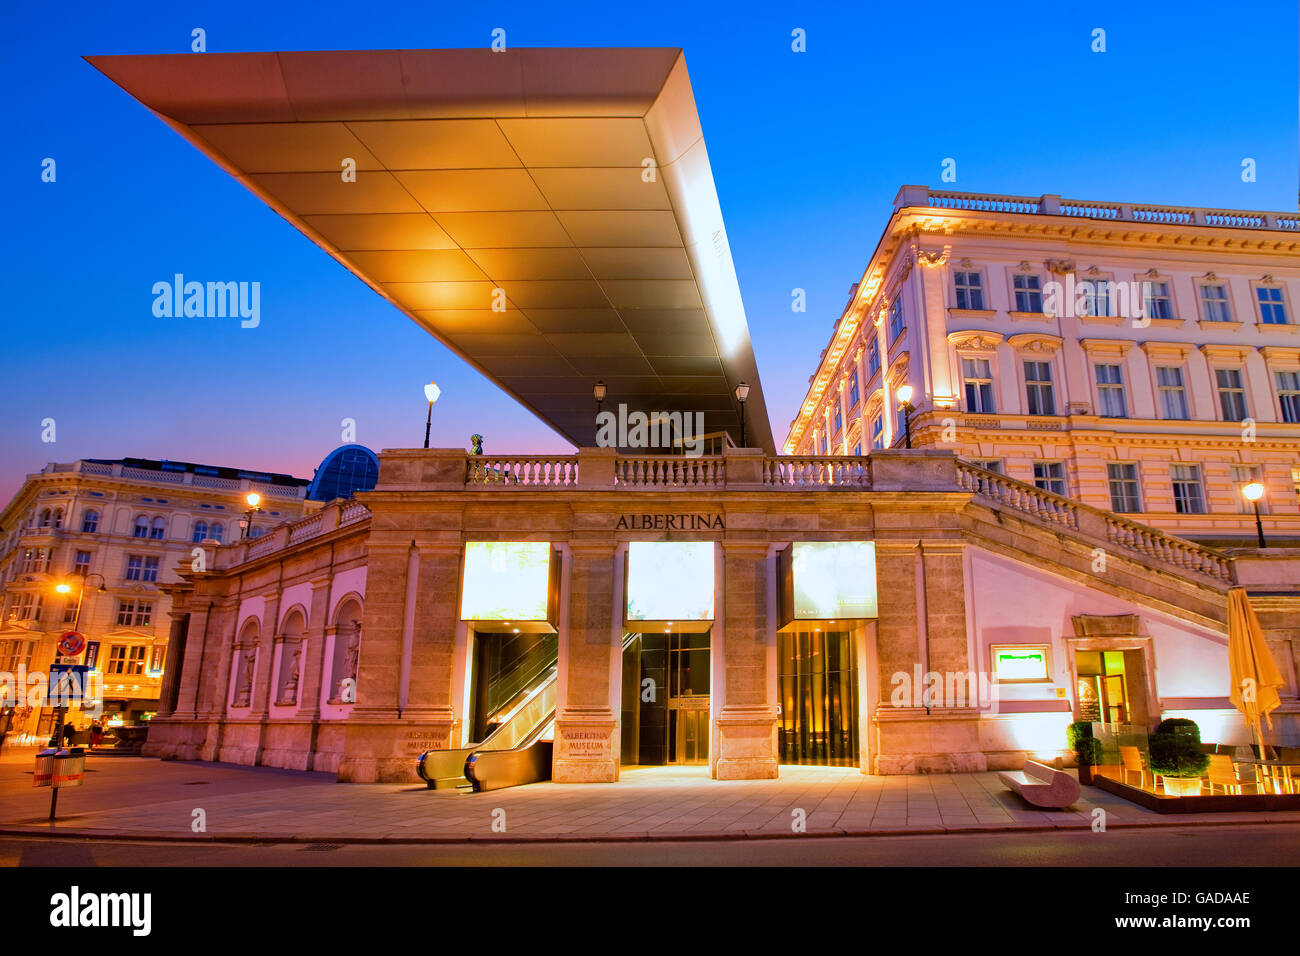 Albertina museum at night in Vienna Stock Photo